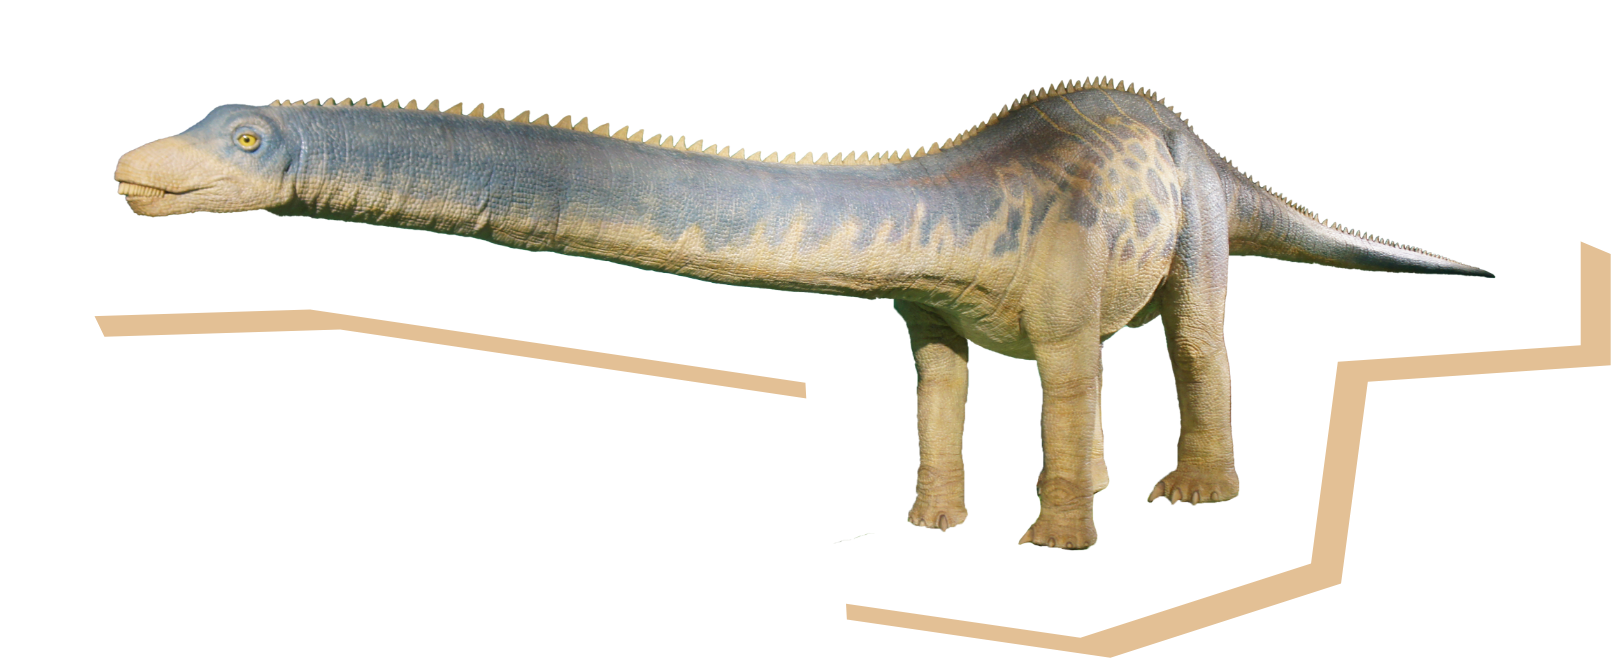 バロサウルスの画像